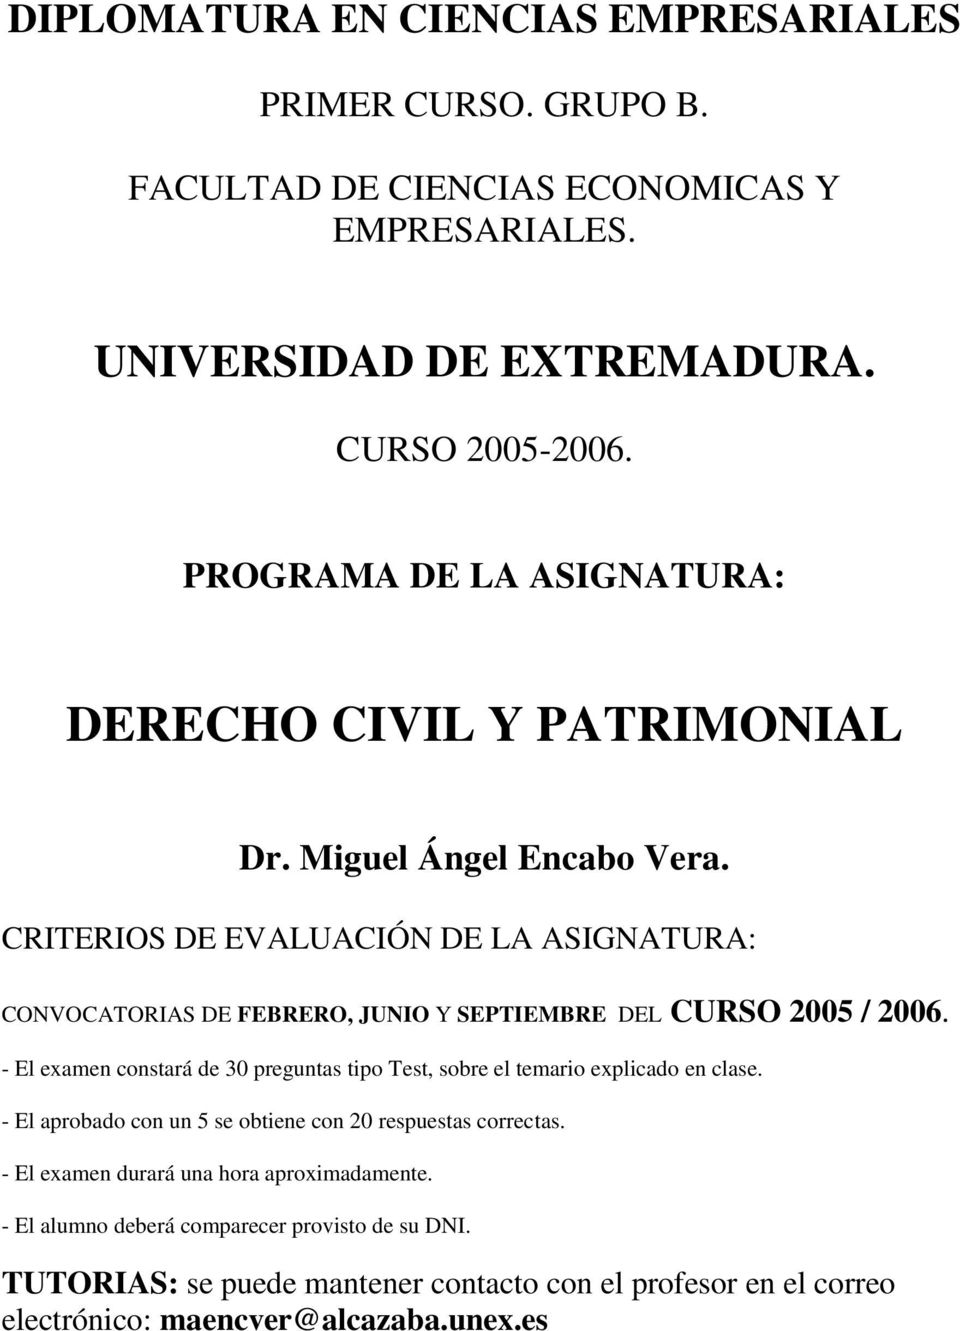 CRITERIOS DE EVALUACIÓN DE LA ASIGNATURA: CONVOCATORIAS DE FEBRERO, JUNIO Y SEPTIEMBRE DEL CURSO 2005 / 2006.